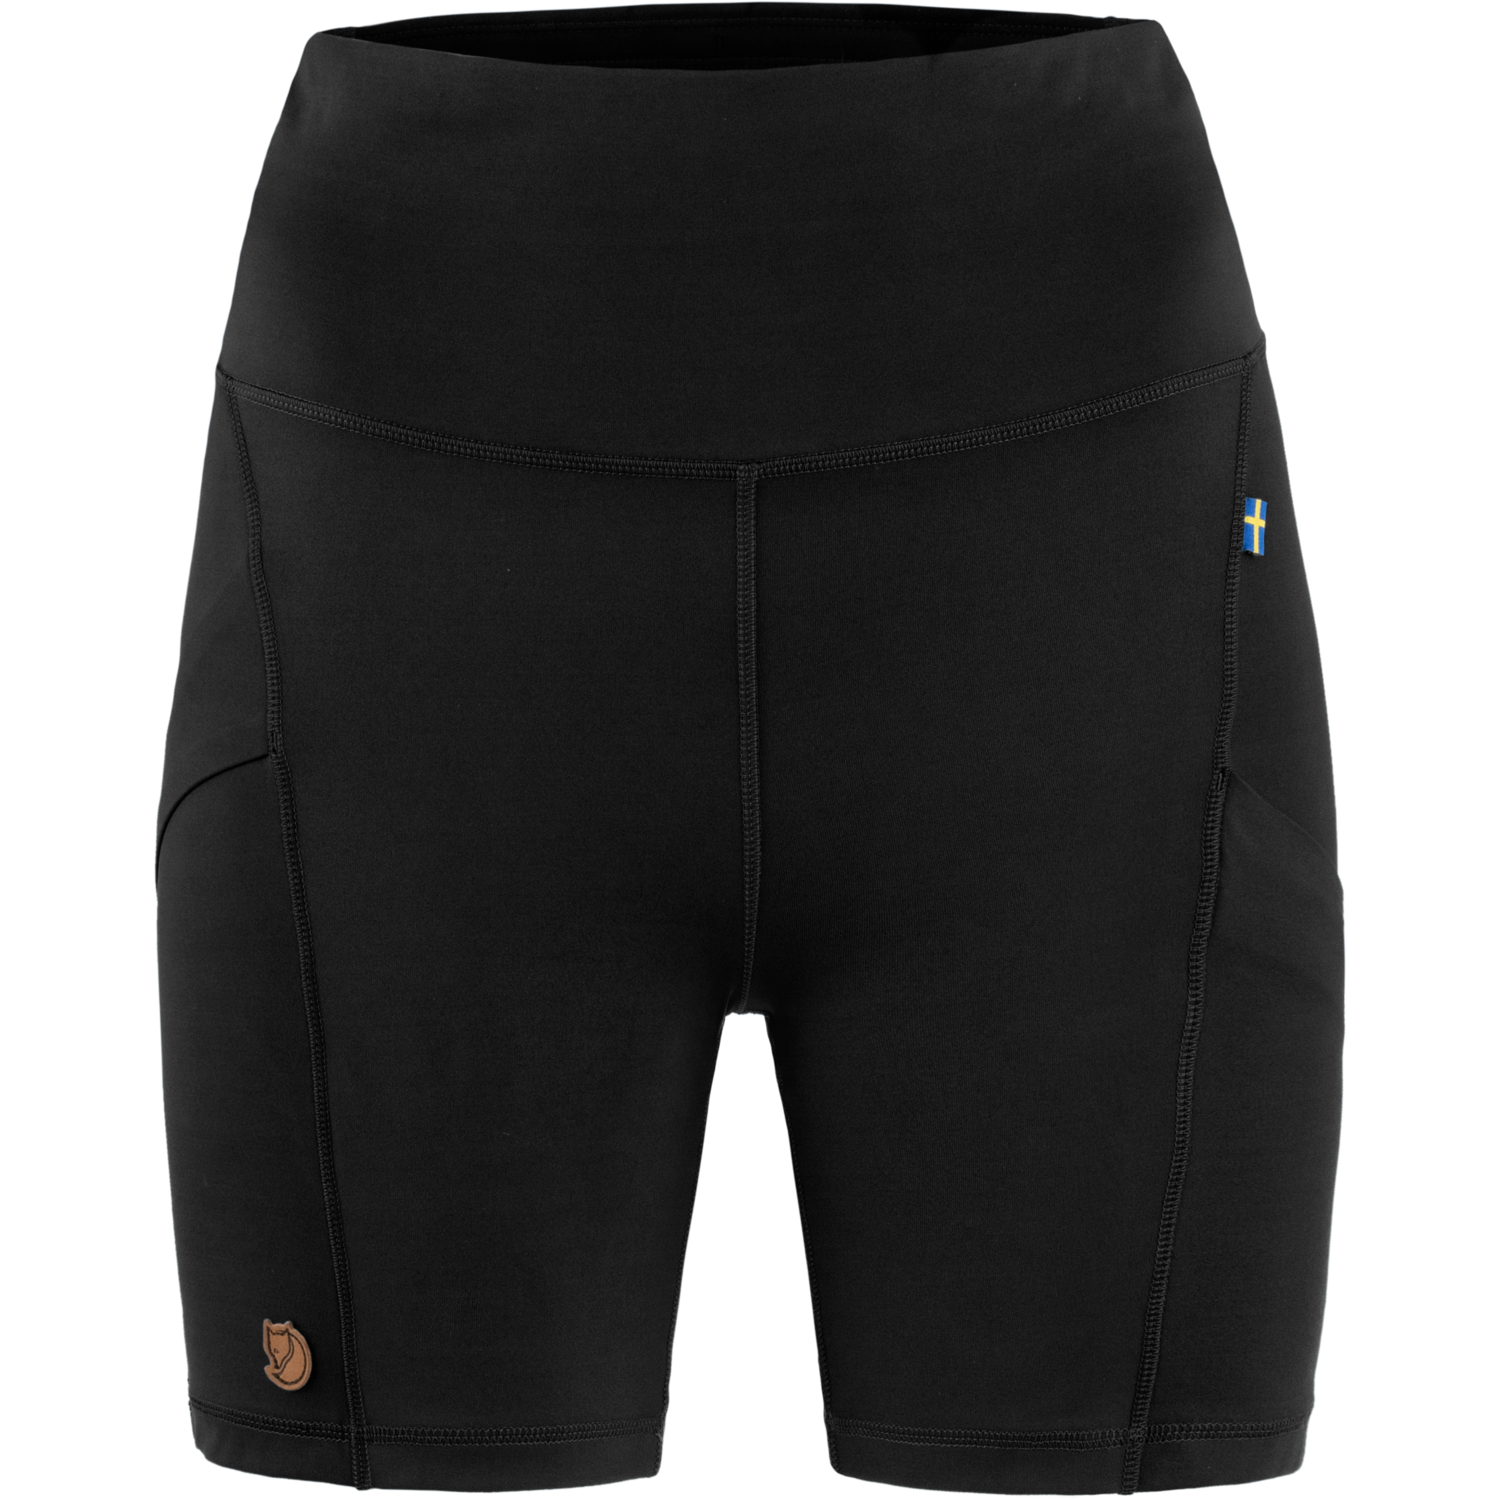 Fjällräven Fjällräven Women's Abisko 6 inch Shorts Tights Black XL, Black